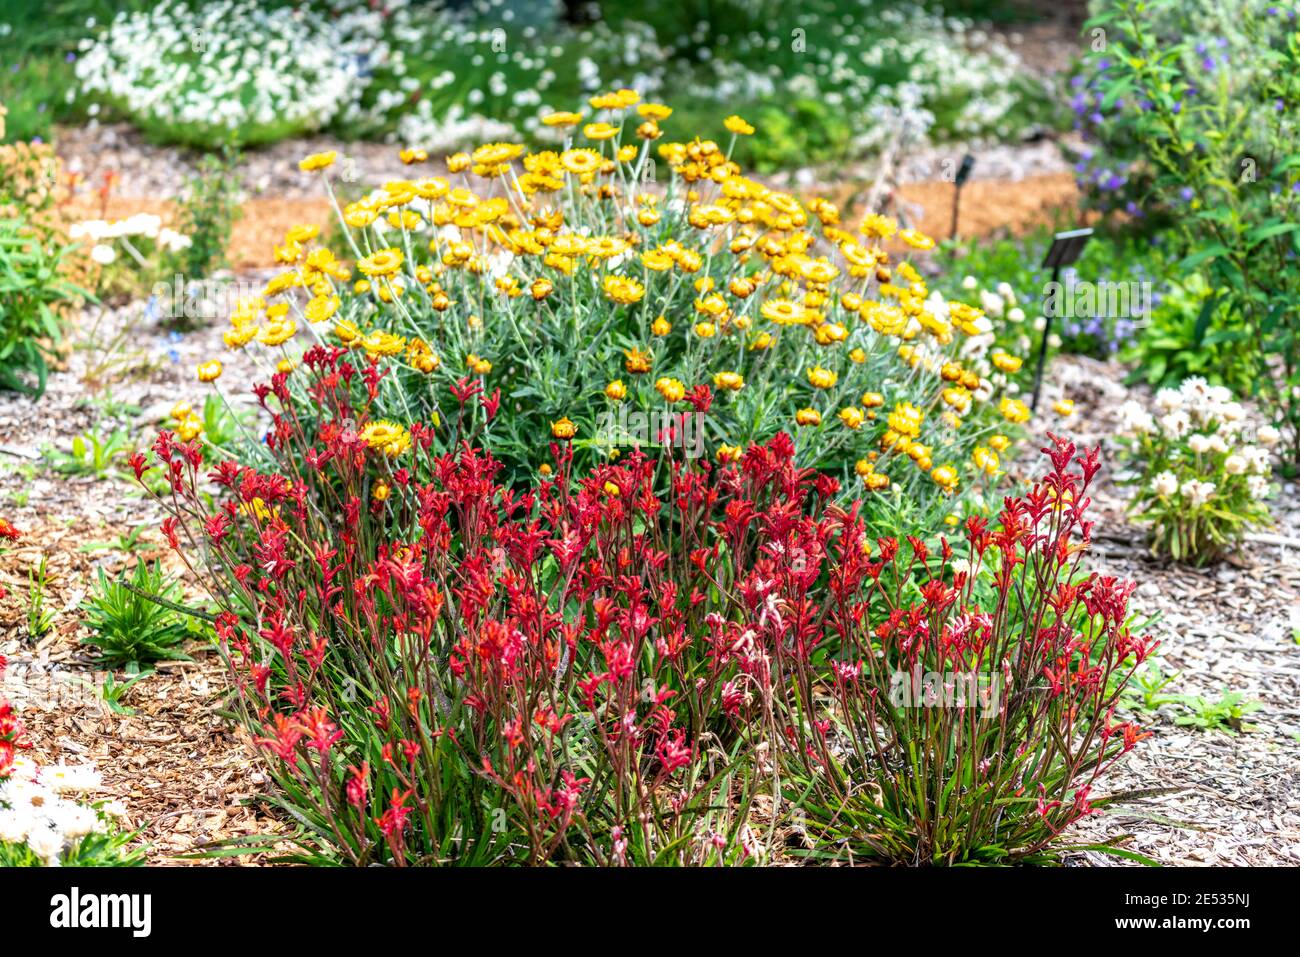 Plantas de Papas de Canguro Rojo delante de las Daises Amarillas en Un jardín australiano Foto de stock